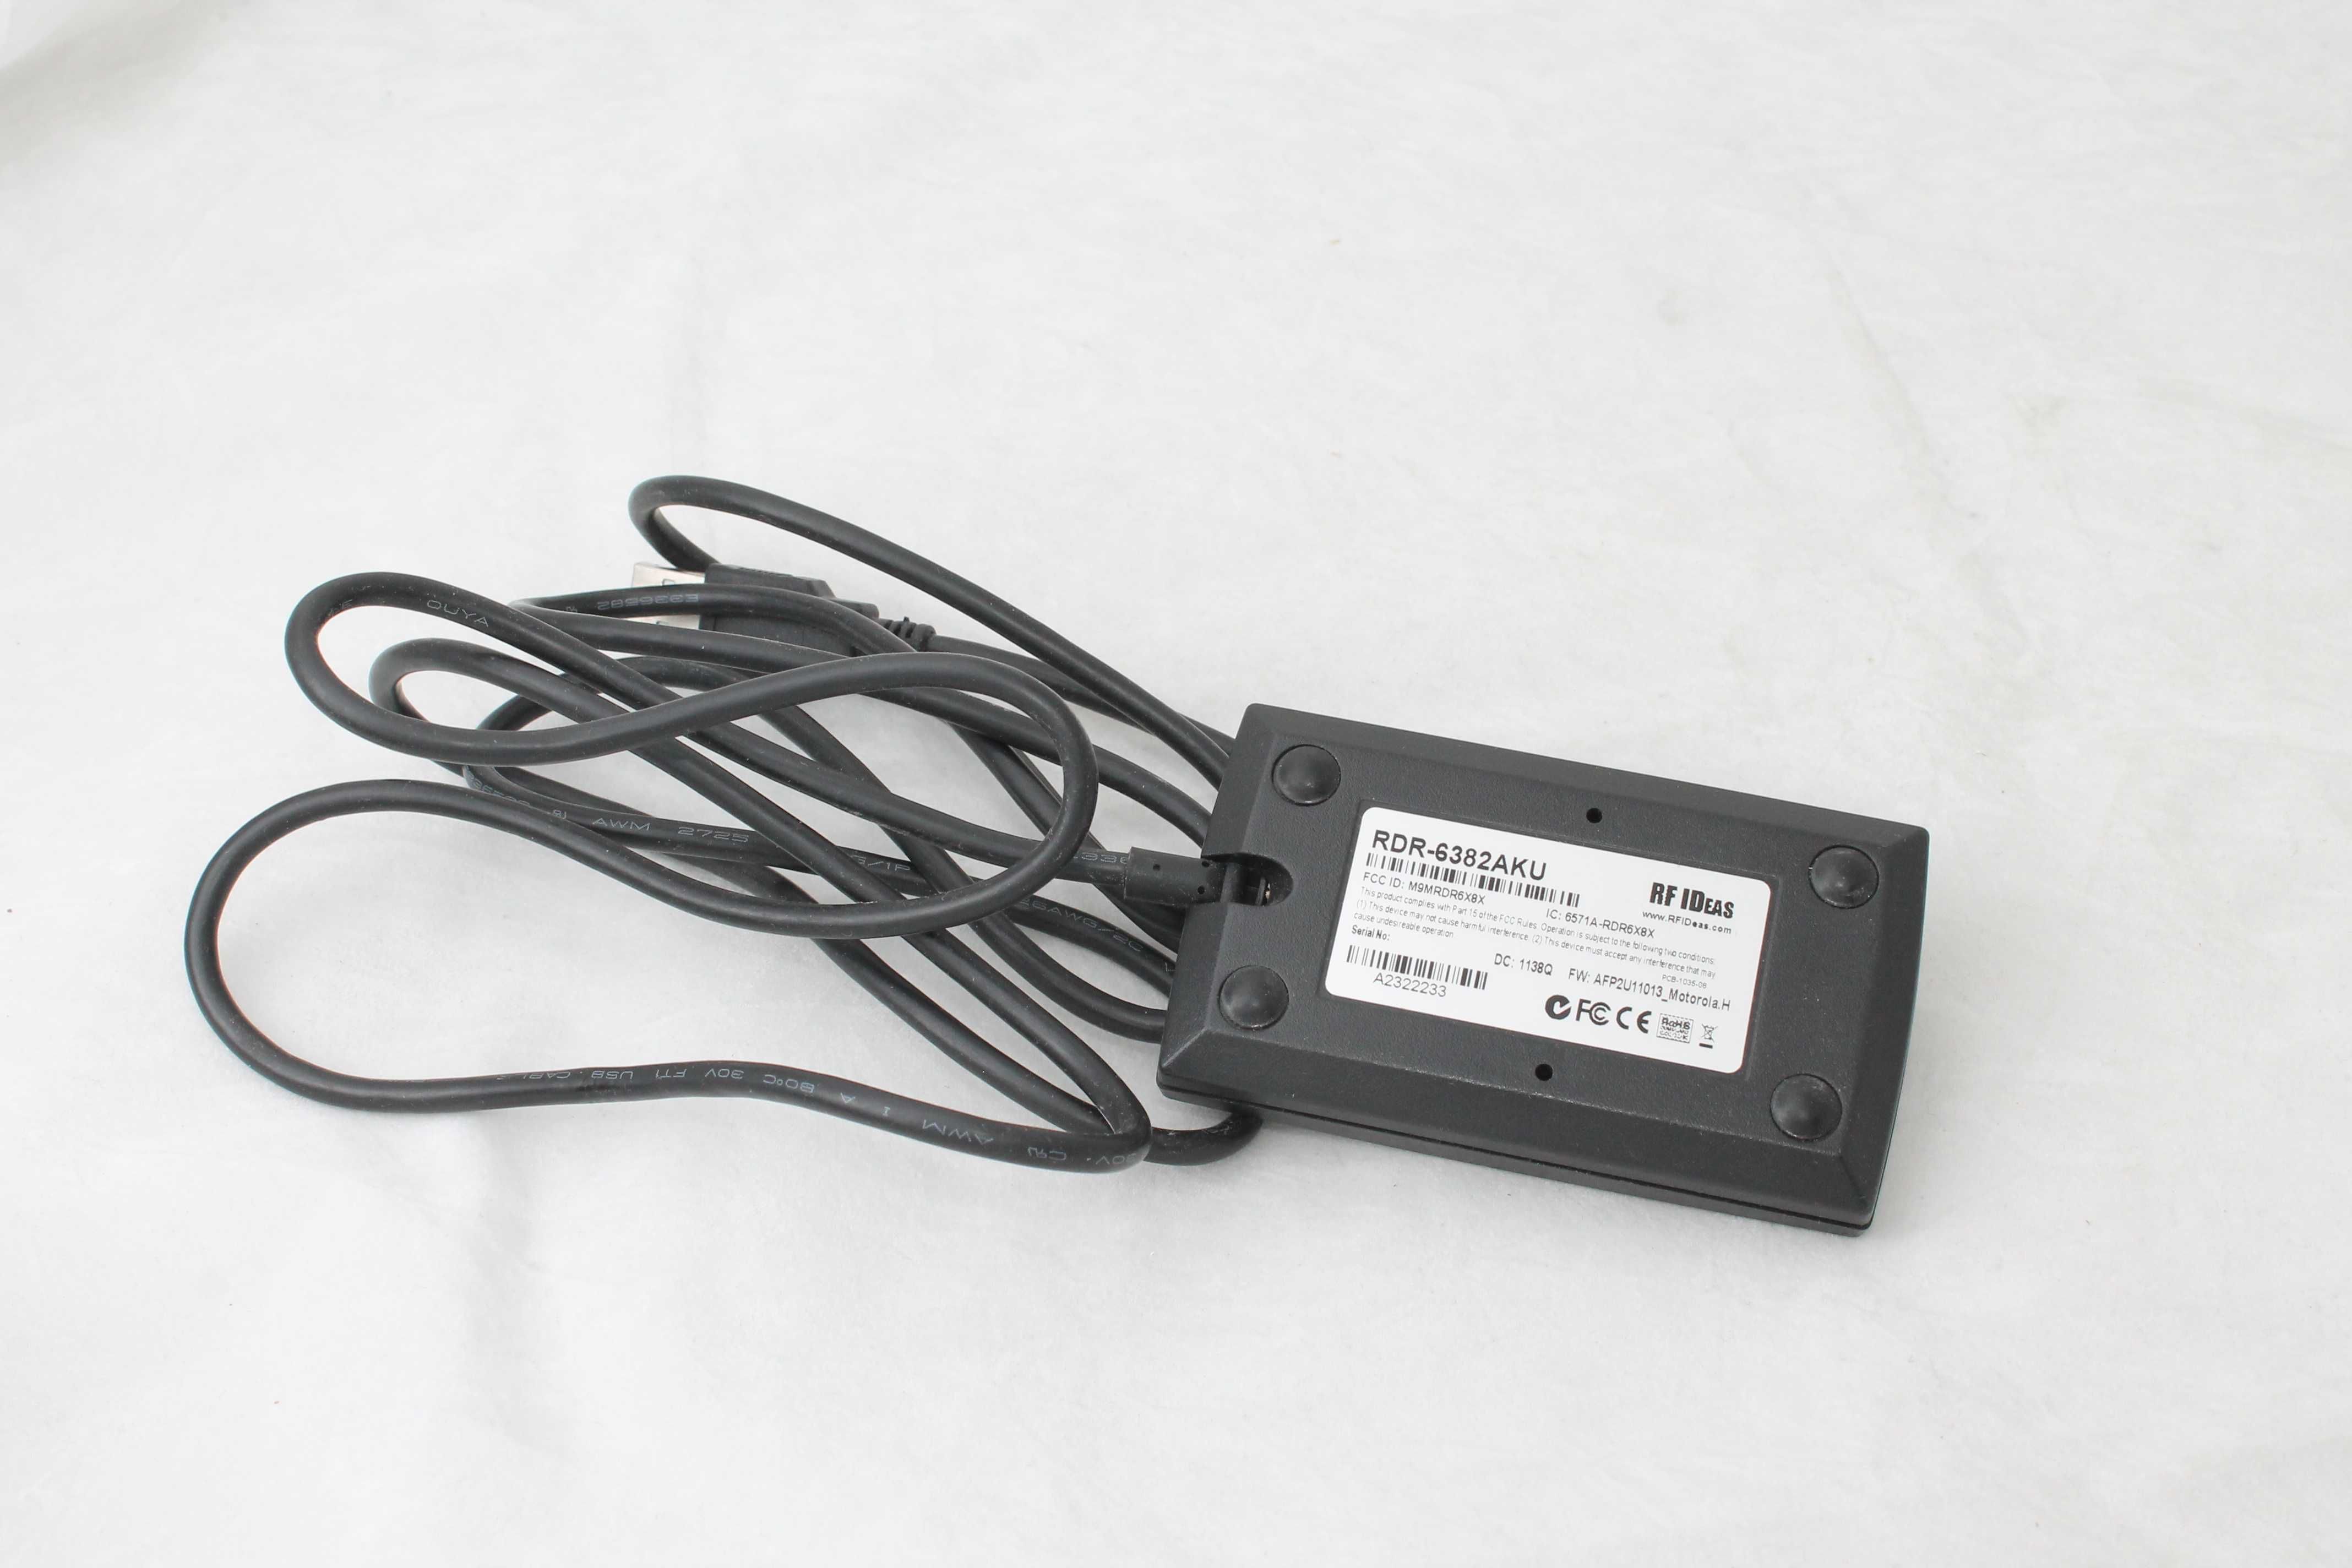 Cititor RFID card RF IDeas RDR-6382AKU pe USB